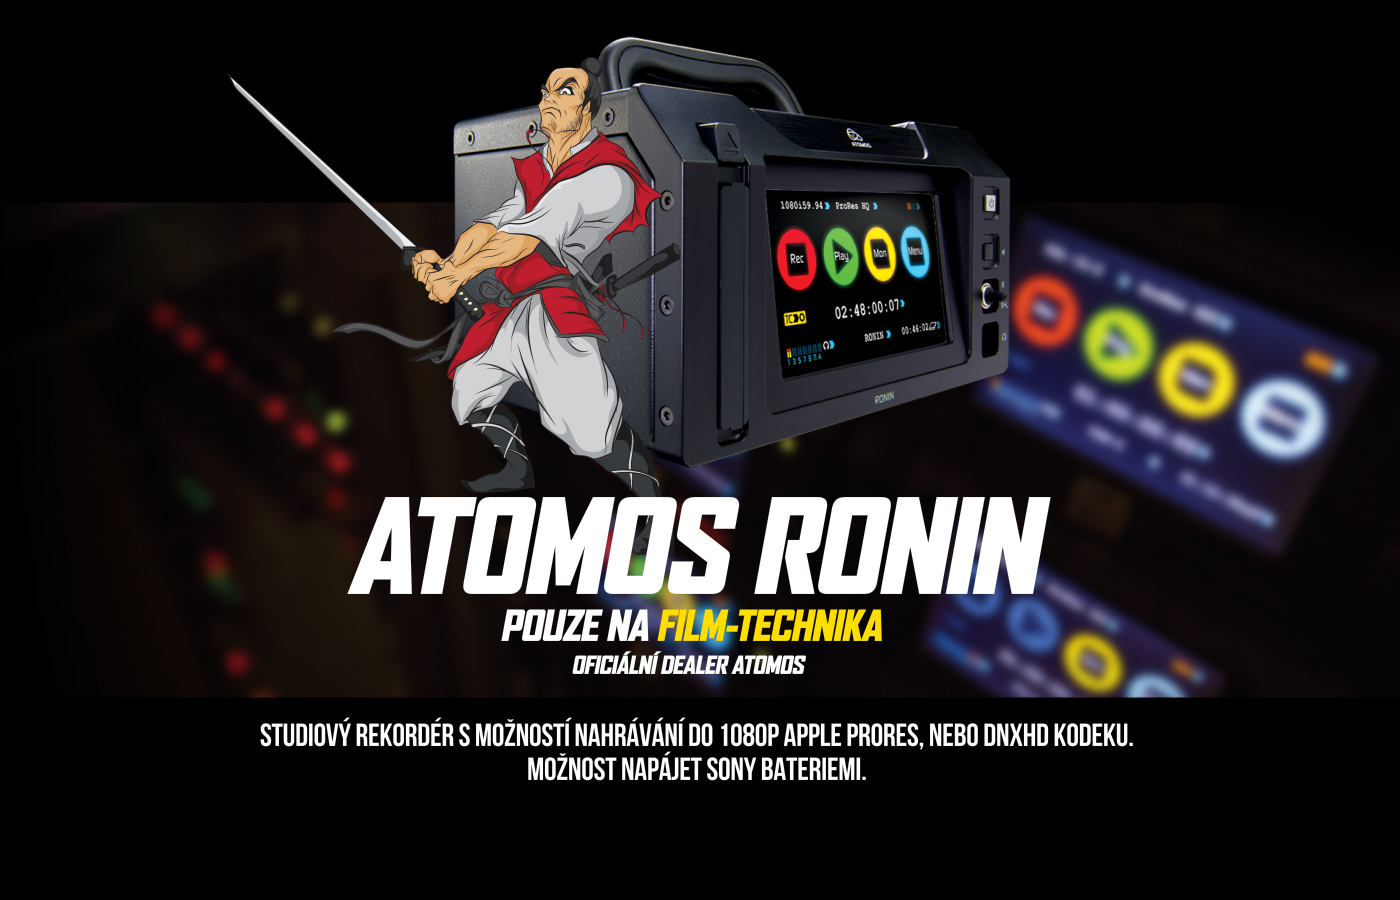 atomos_ronin2